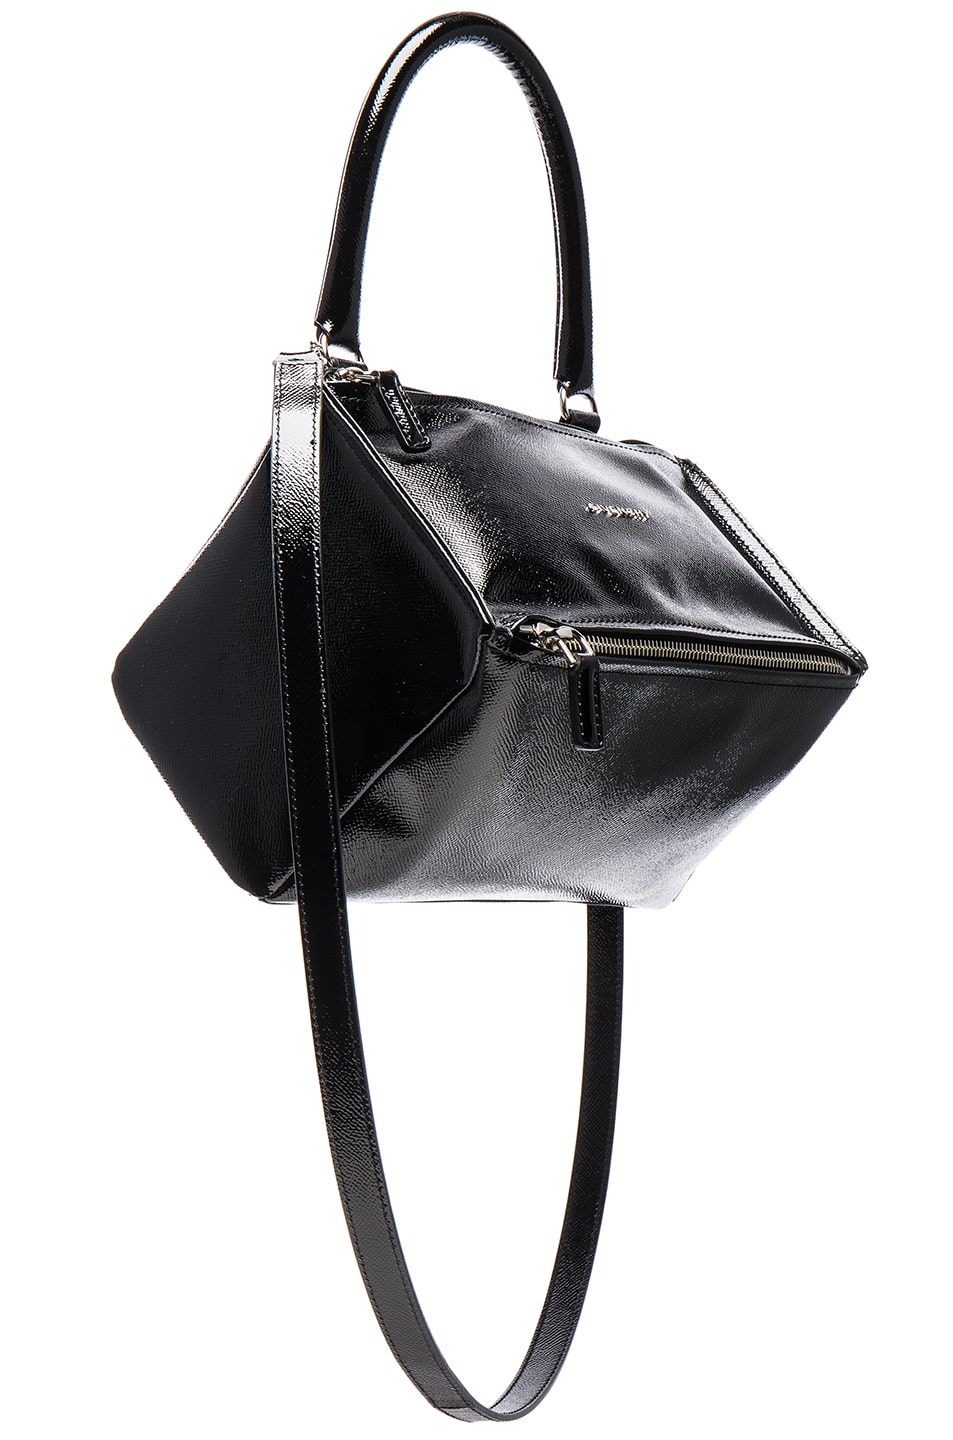 Givenchy Pandora Patent Small Bag